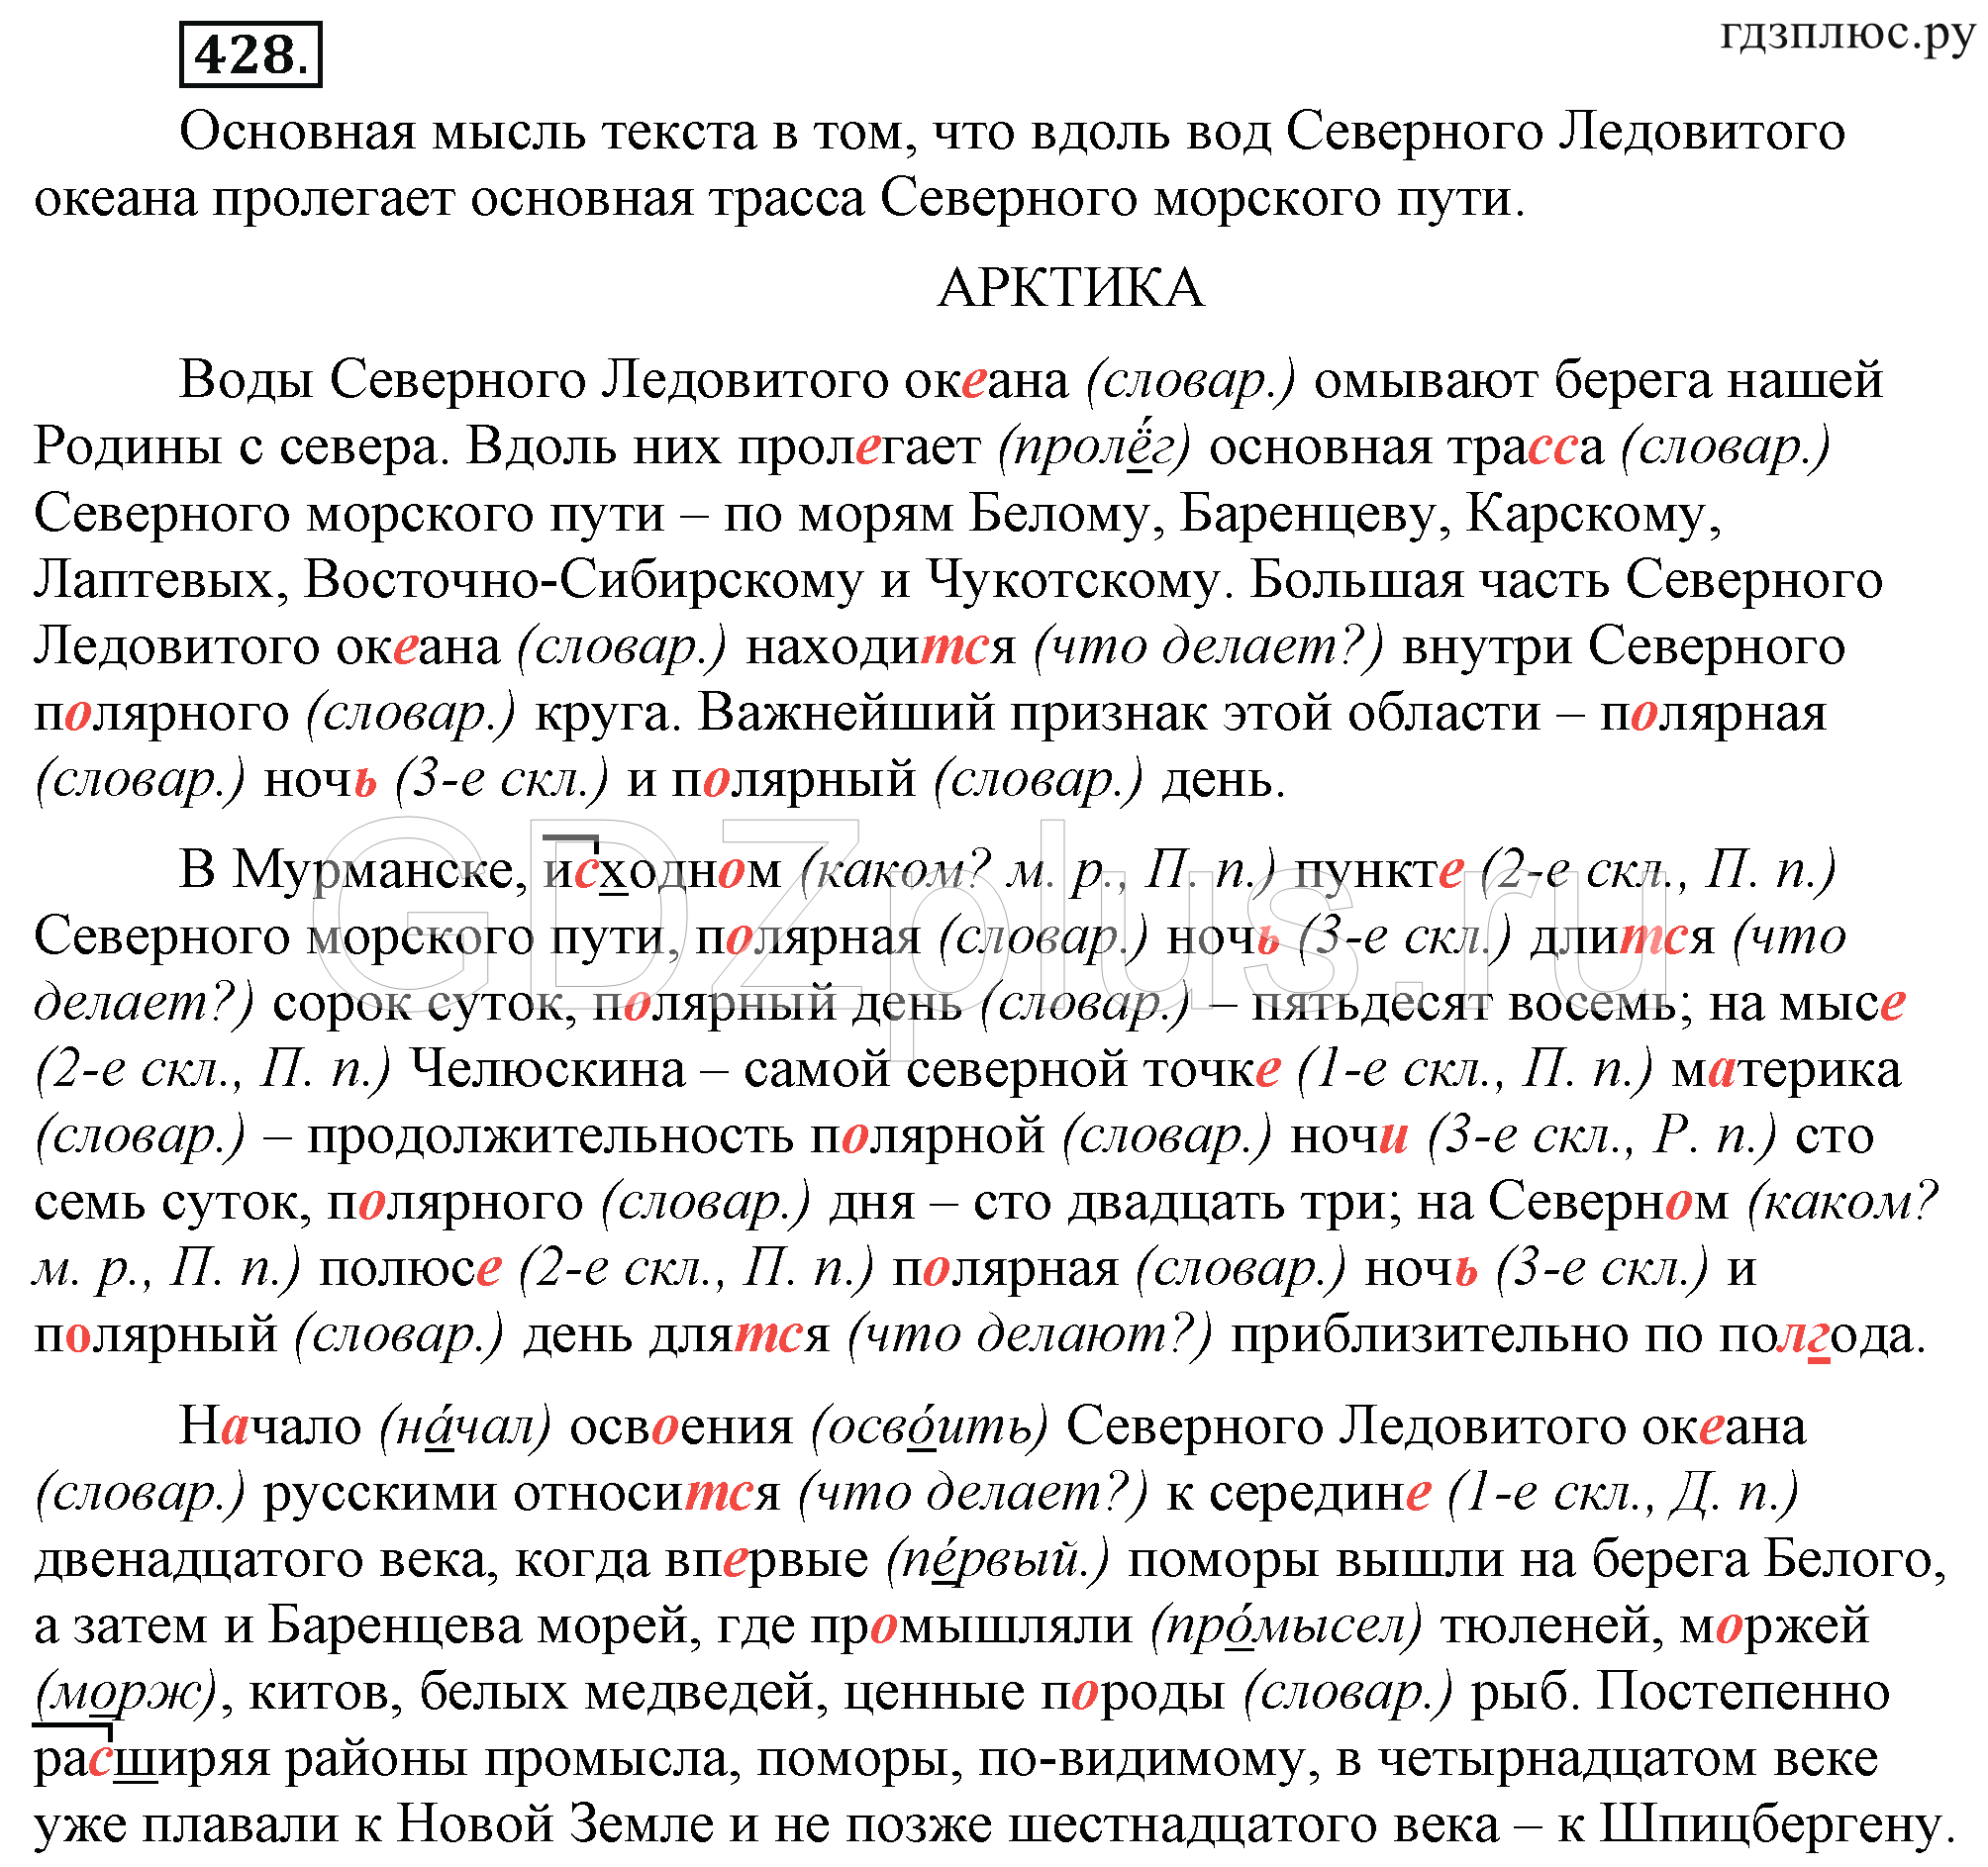 Телеграмма по русскому языку 6 класс фото 3